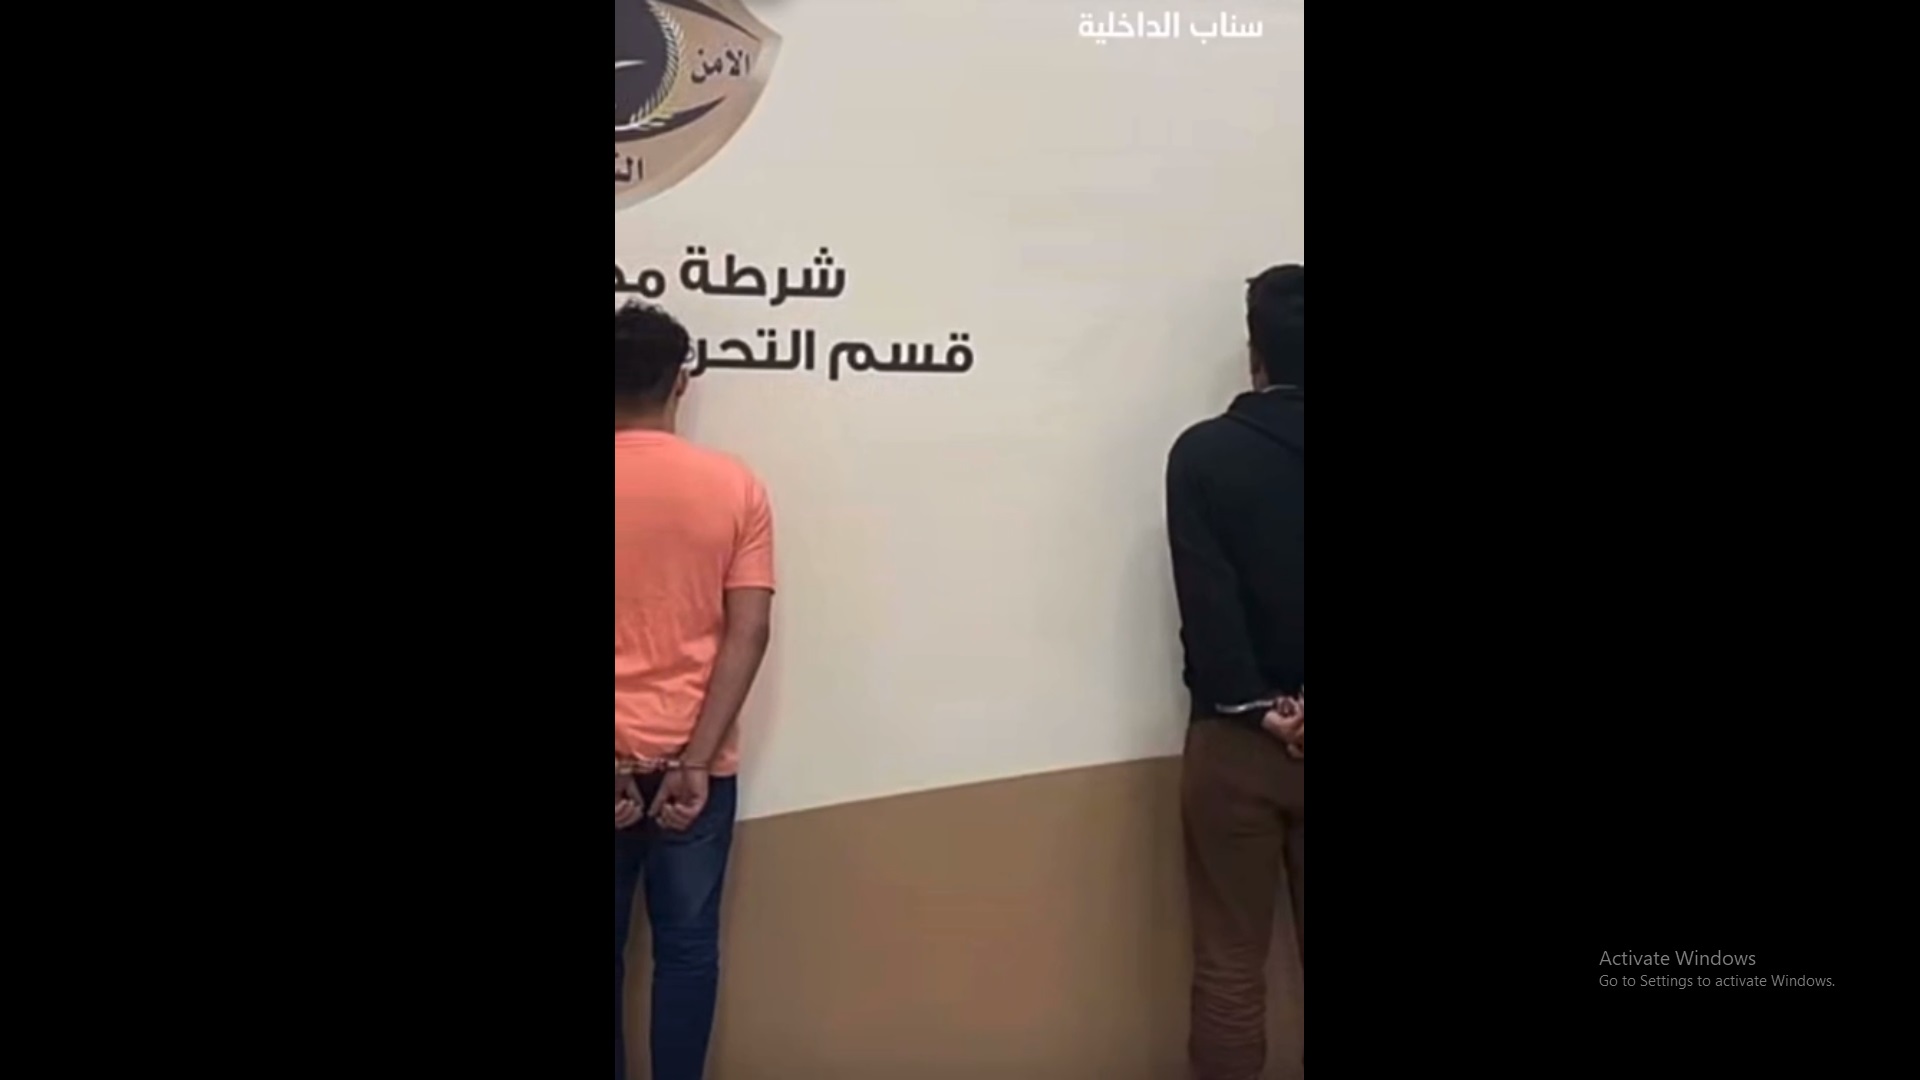 صورة القبض على 4 مخالفين ارتكبوا حوادث سطو على محال في مكة